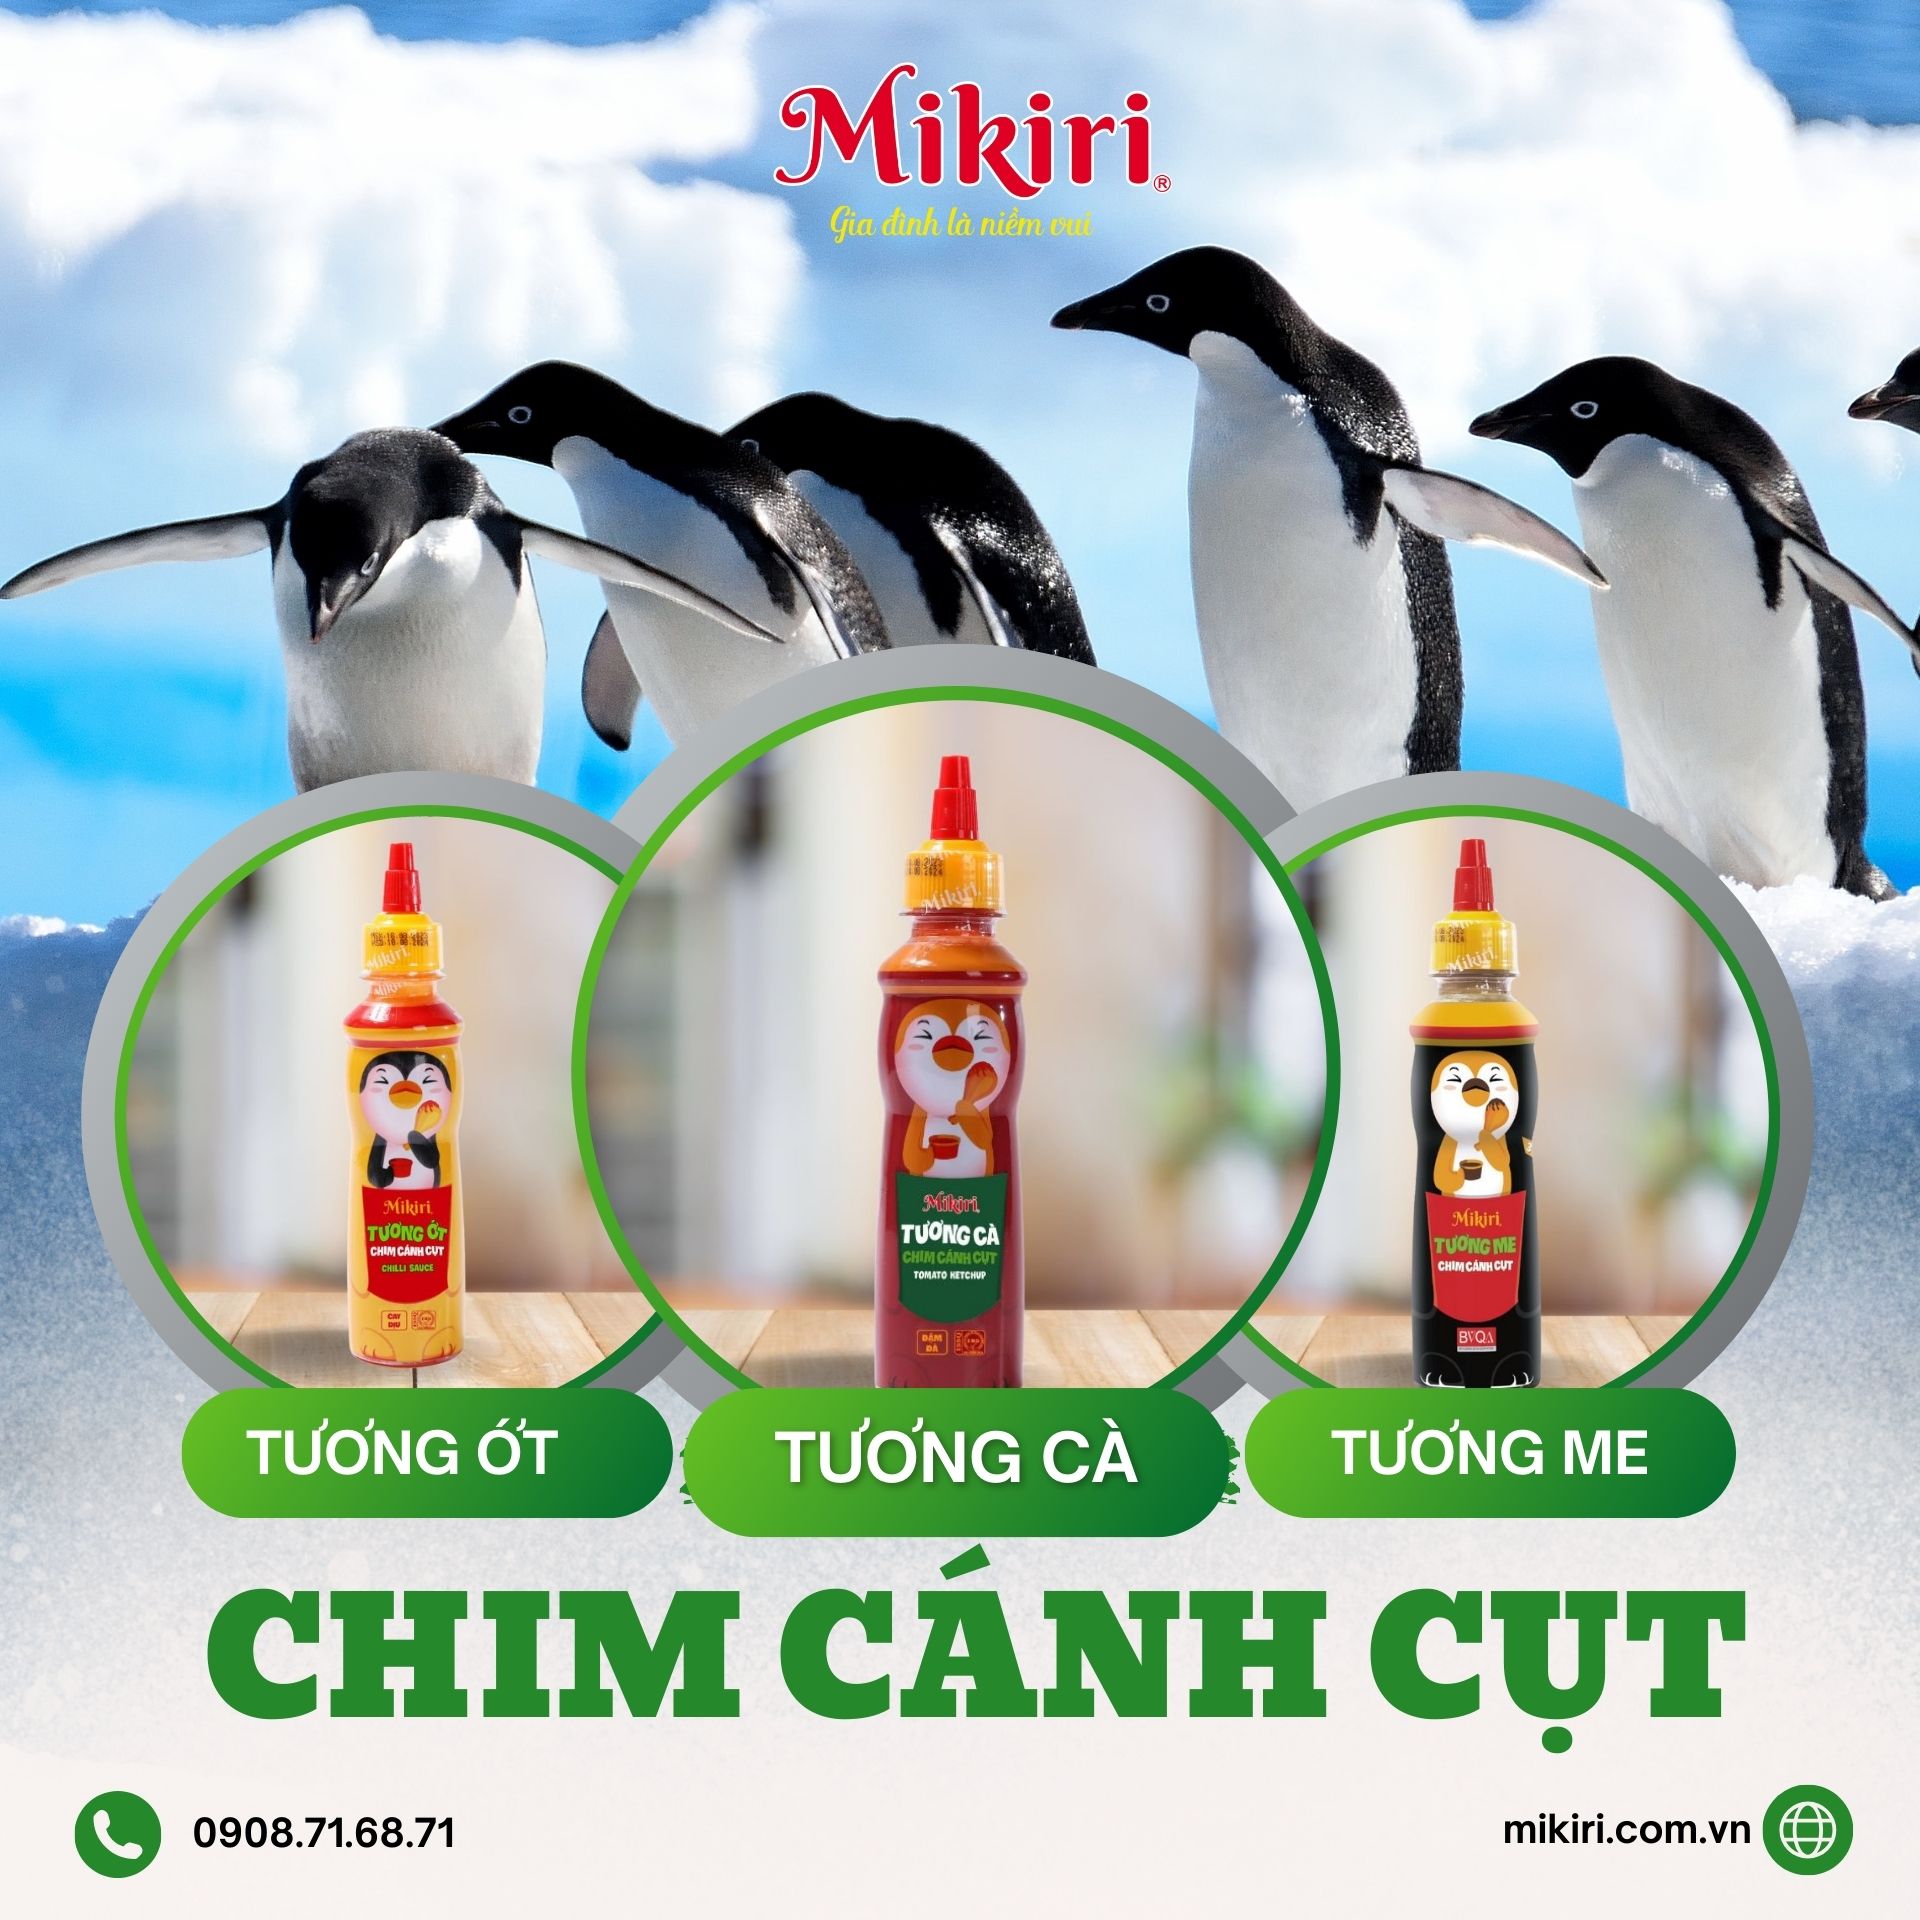 Biệt đội chim cánh cụt Mikiri xin kính chào Chim-canh-cut